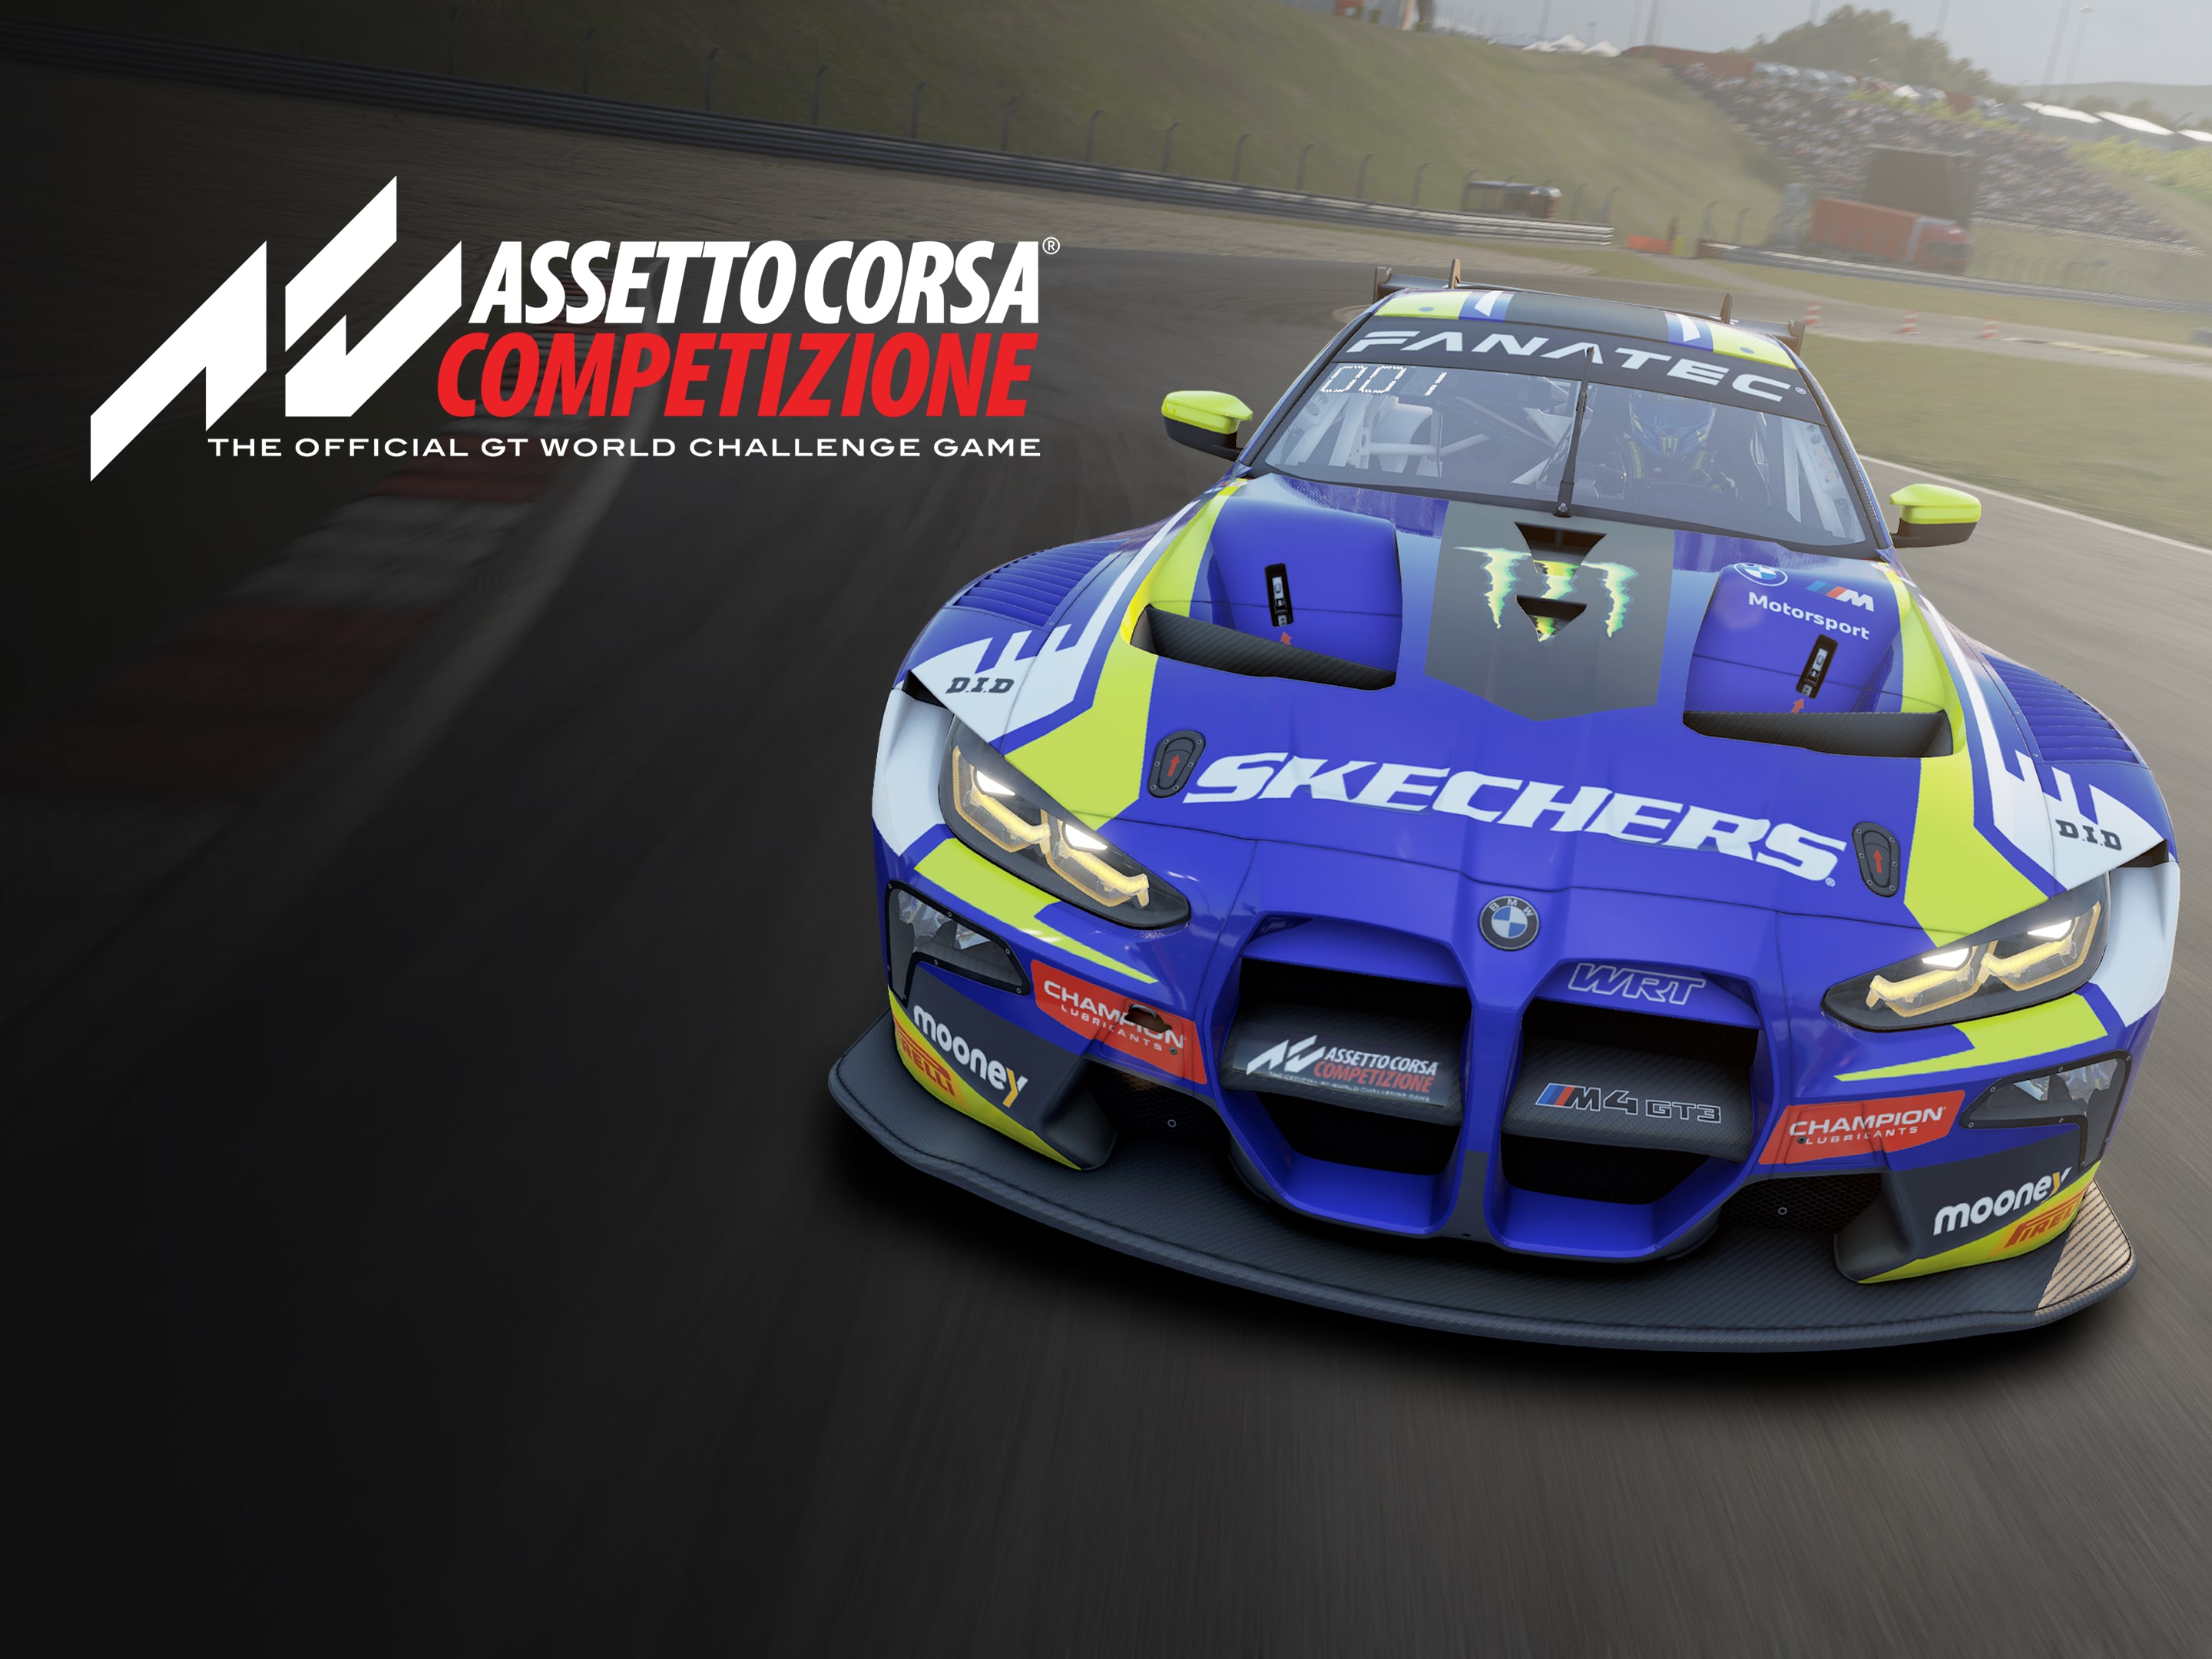 Assetto Corsa Competizione - PlayStation 4